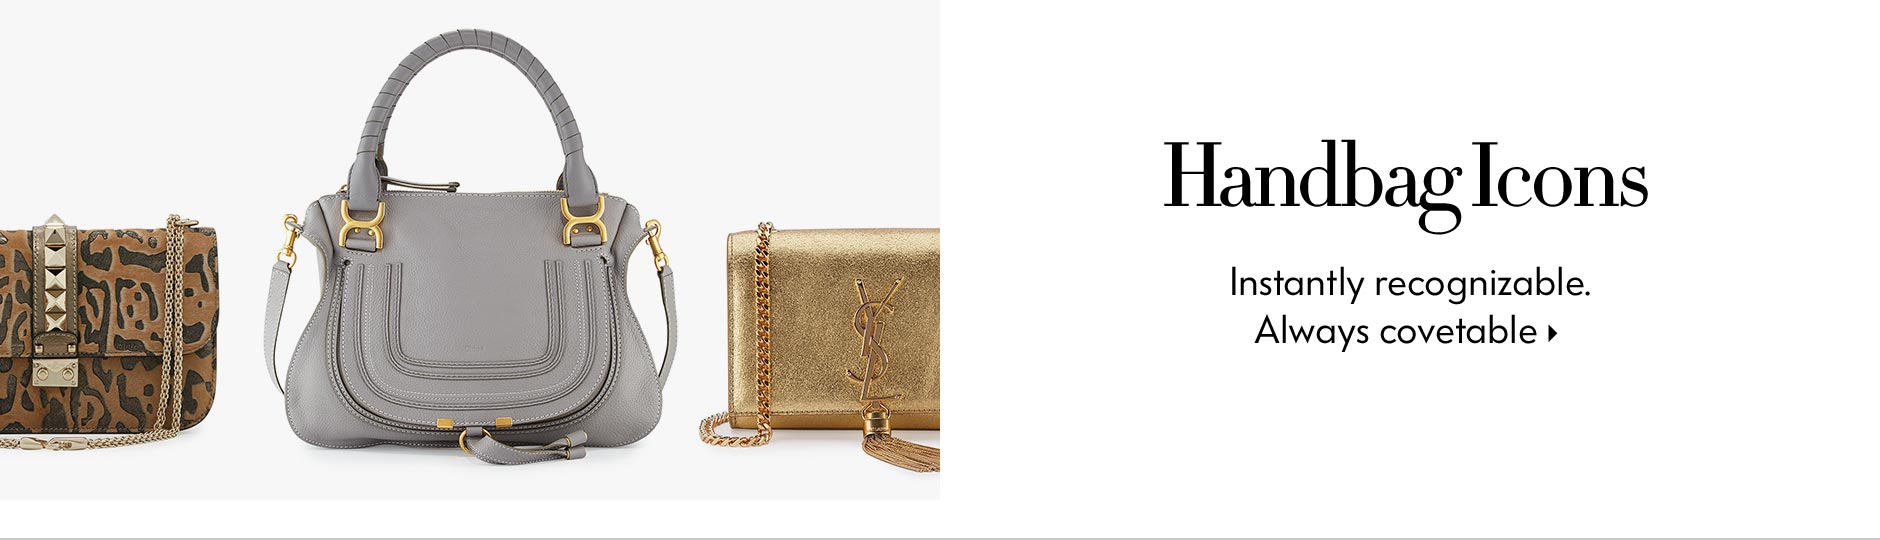 Designer Handbags at Neiman Marcus